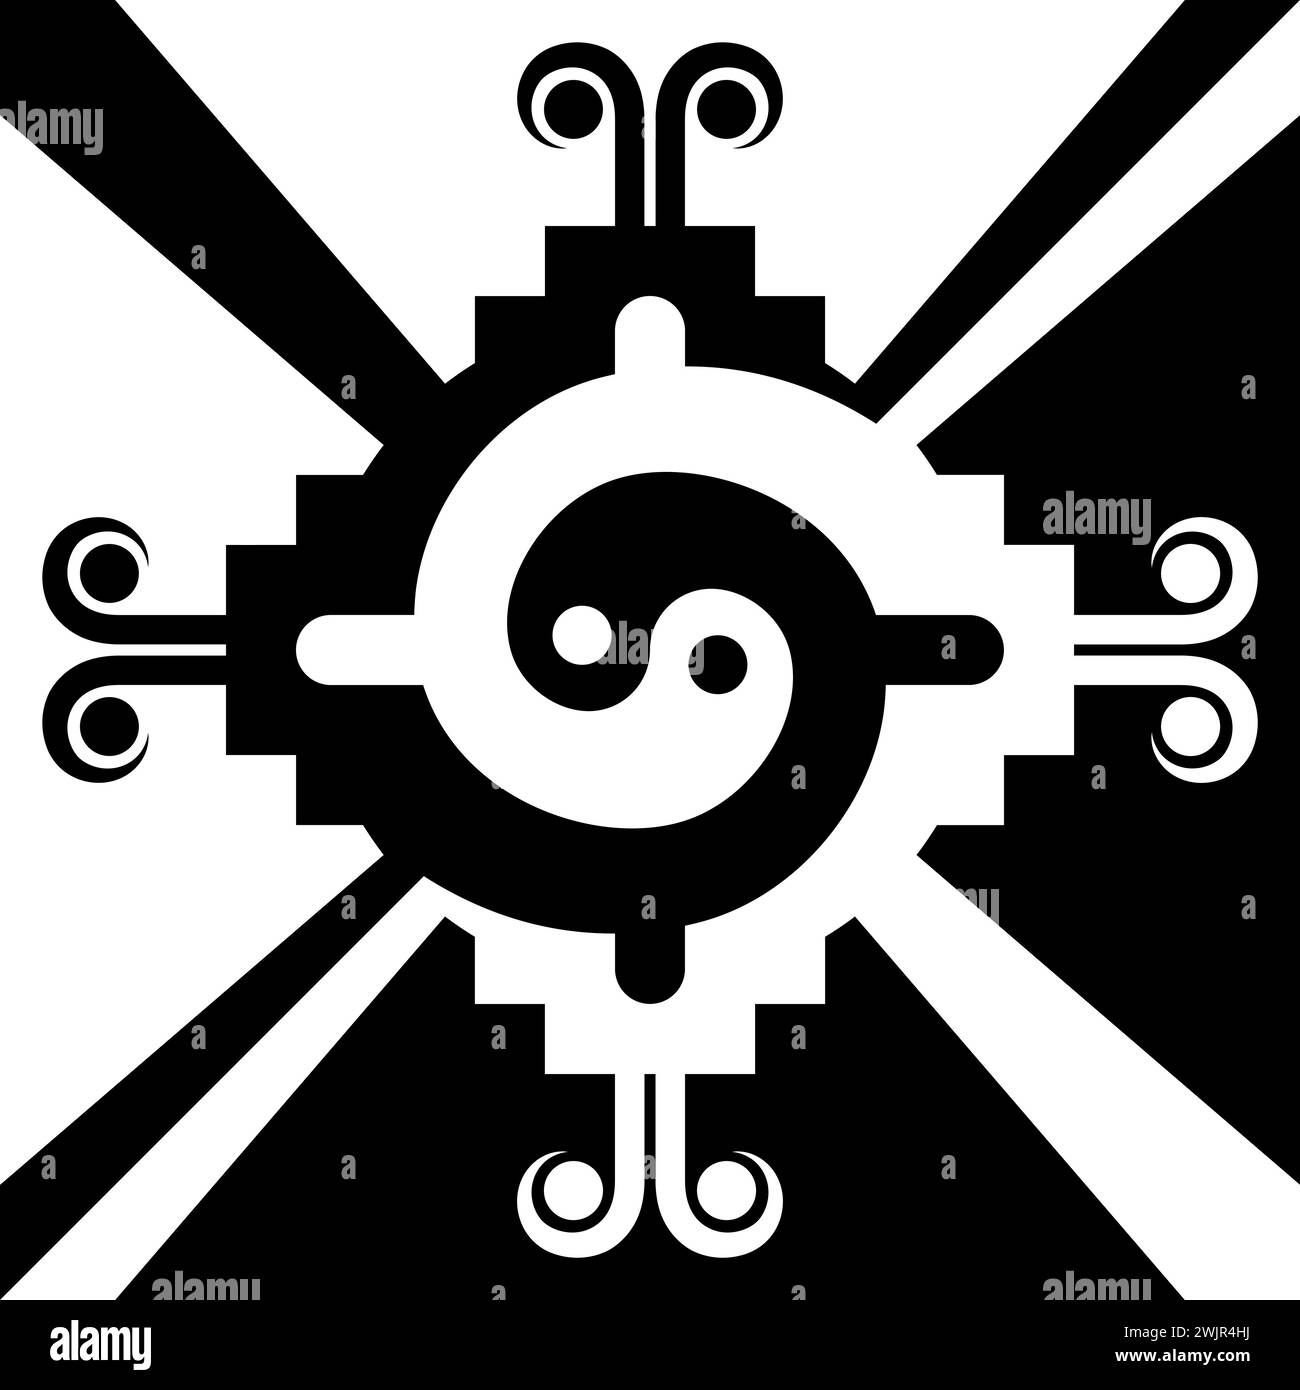 Vektor-Design des aztekischen Zivilisation Stammessymbol, mexikanische indigene geometrische Muster Design Stock Vektor